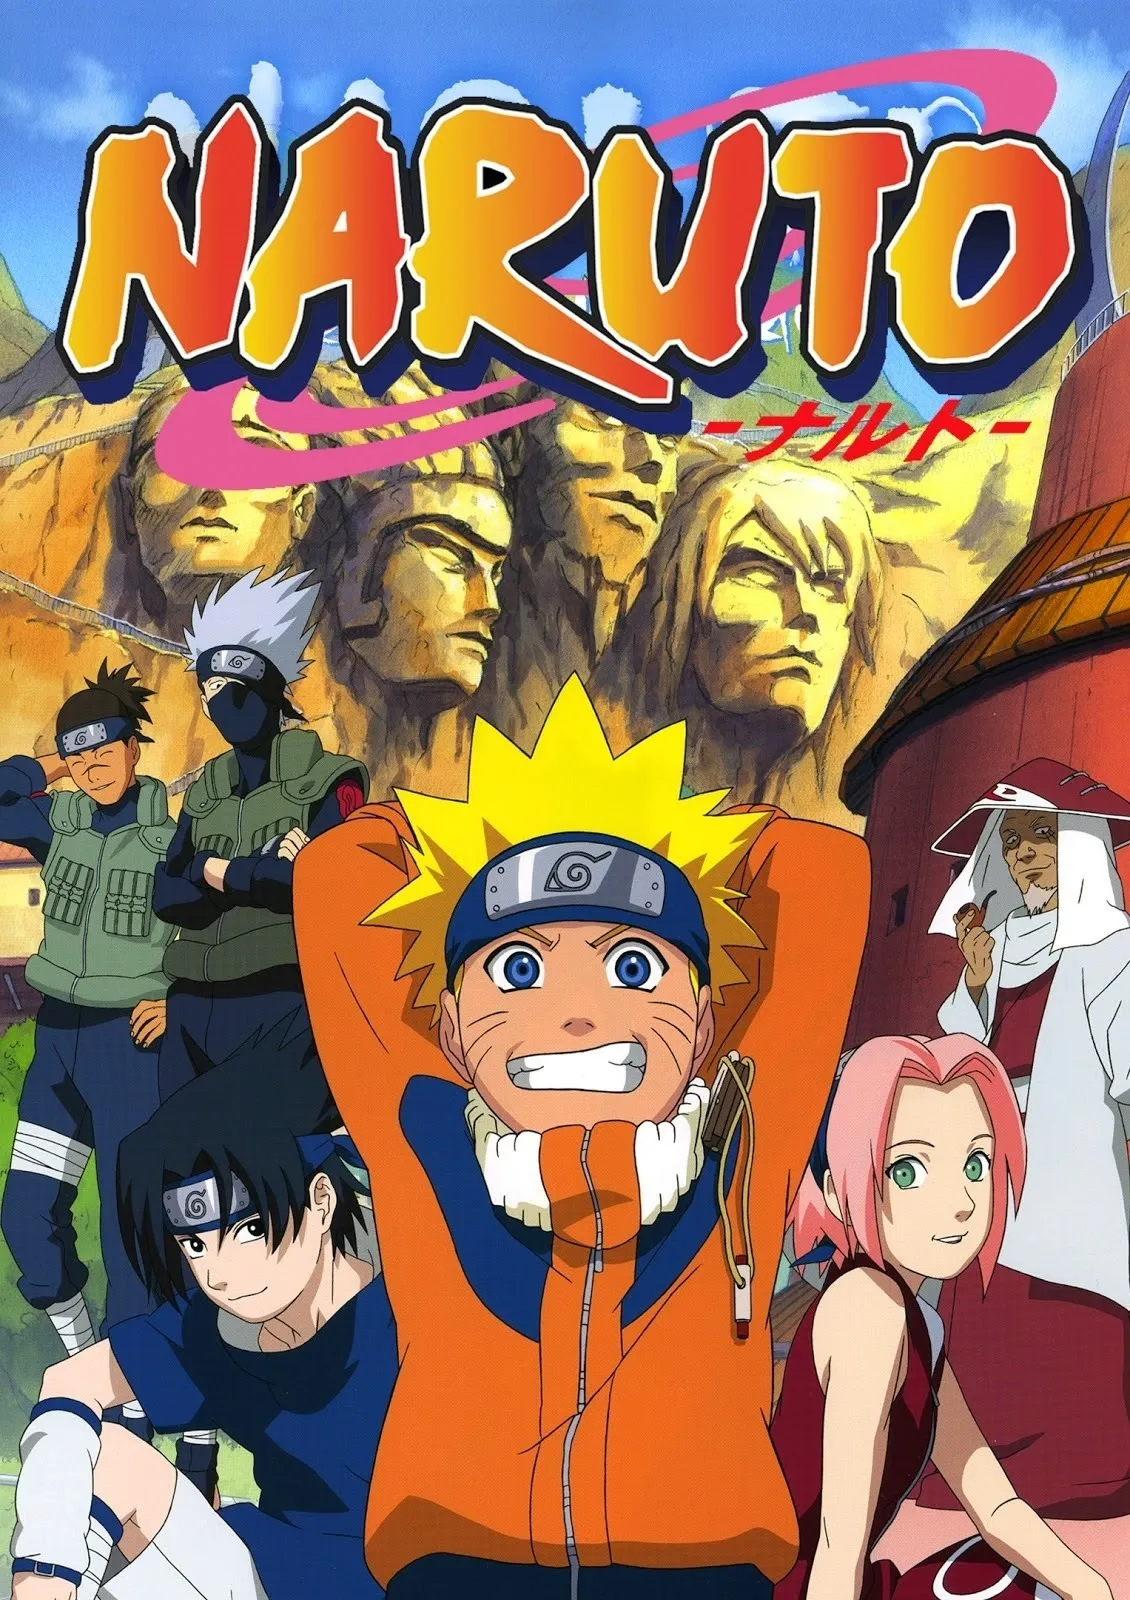 Os 6 melhores episódios de Naruto clássico, segundo IMDb [LISTA]